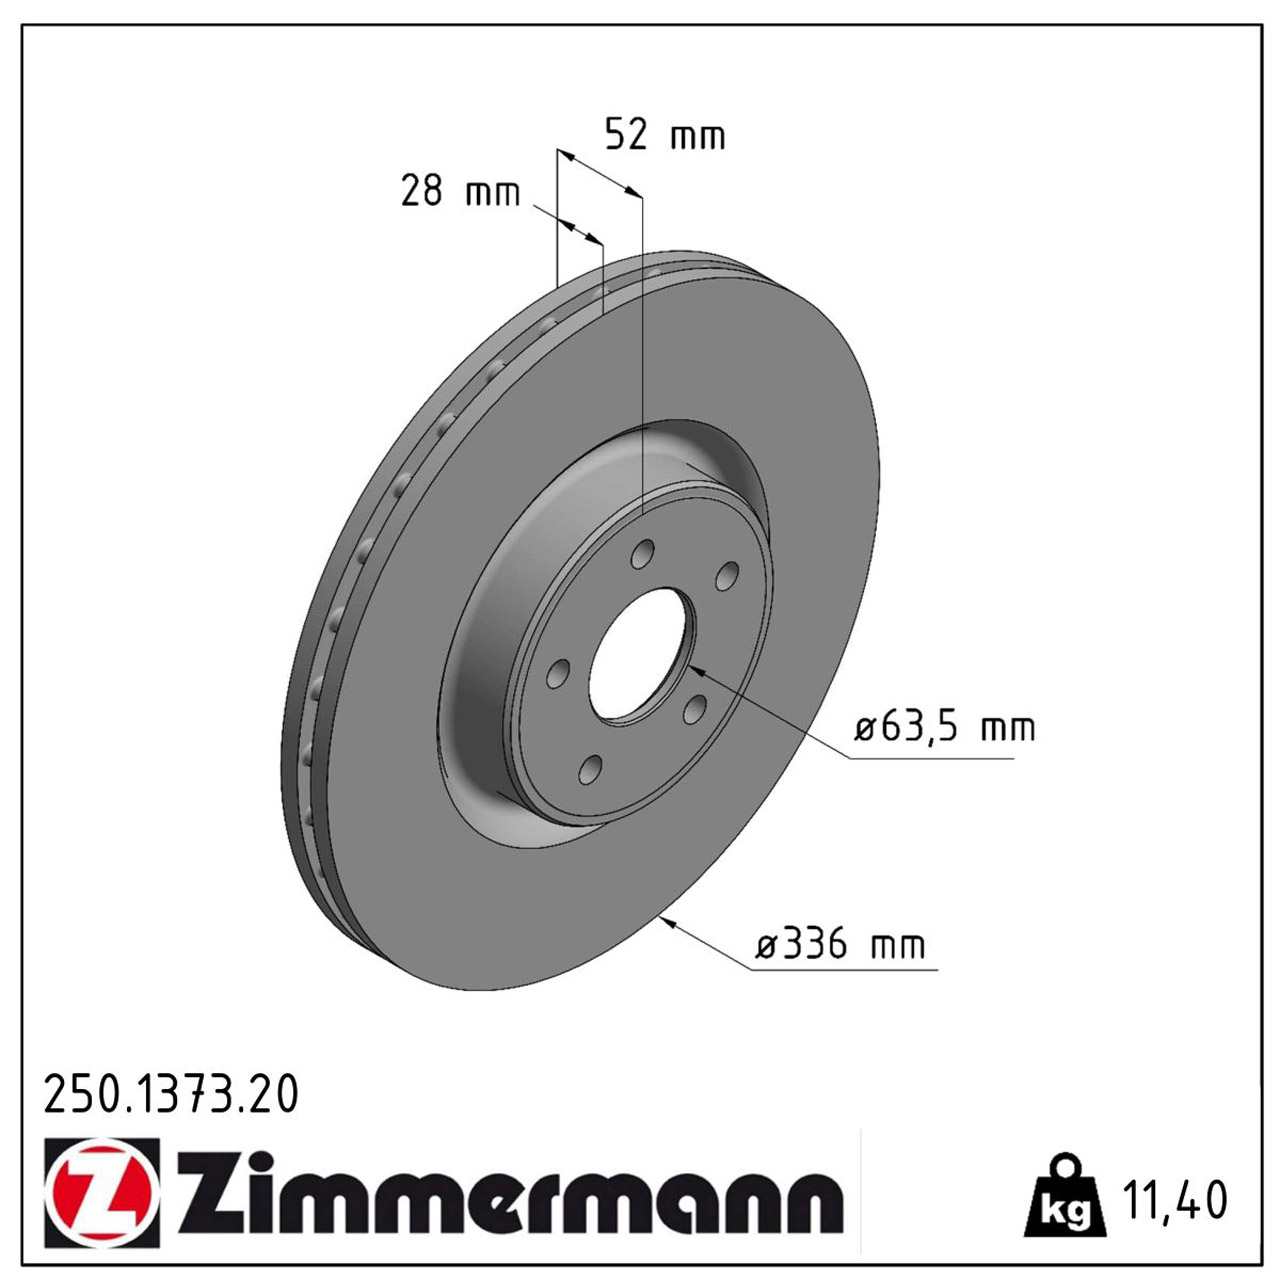 ZIMMERMANN Bremsscheiben + Bremsbeläge FORD Focus 2 MK2 2.5 RS 305 PS vorne